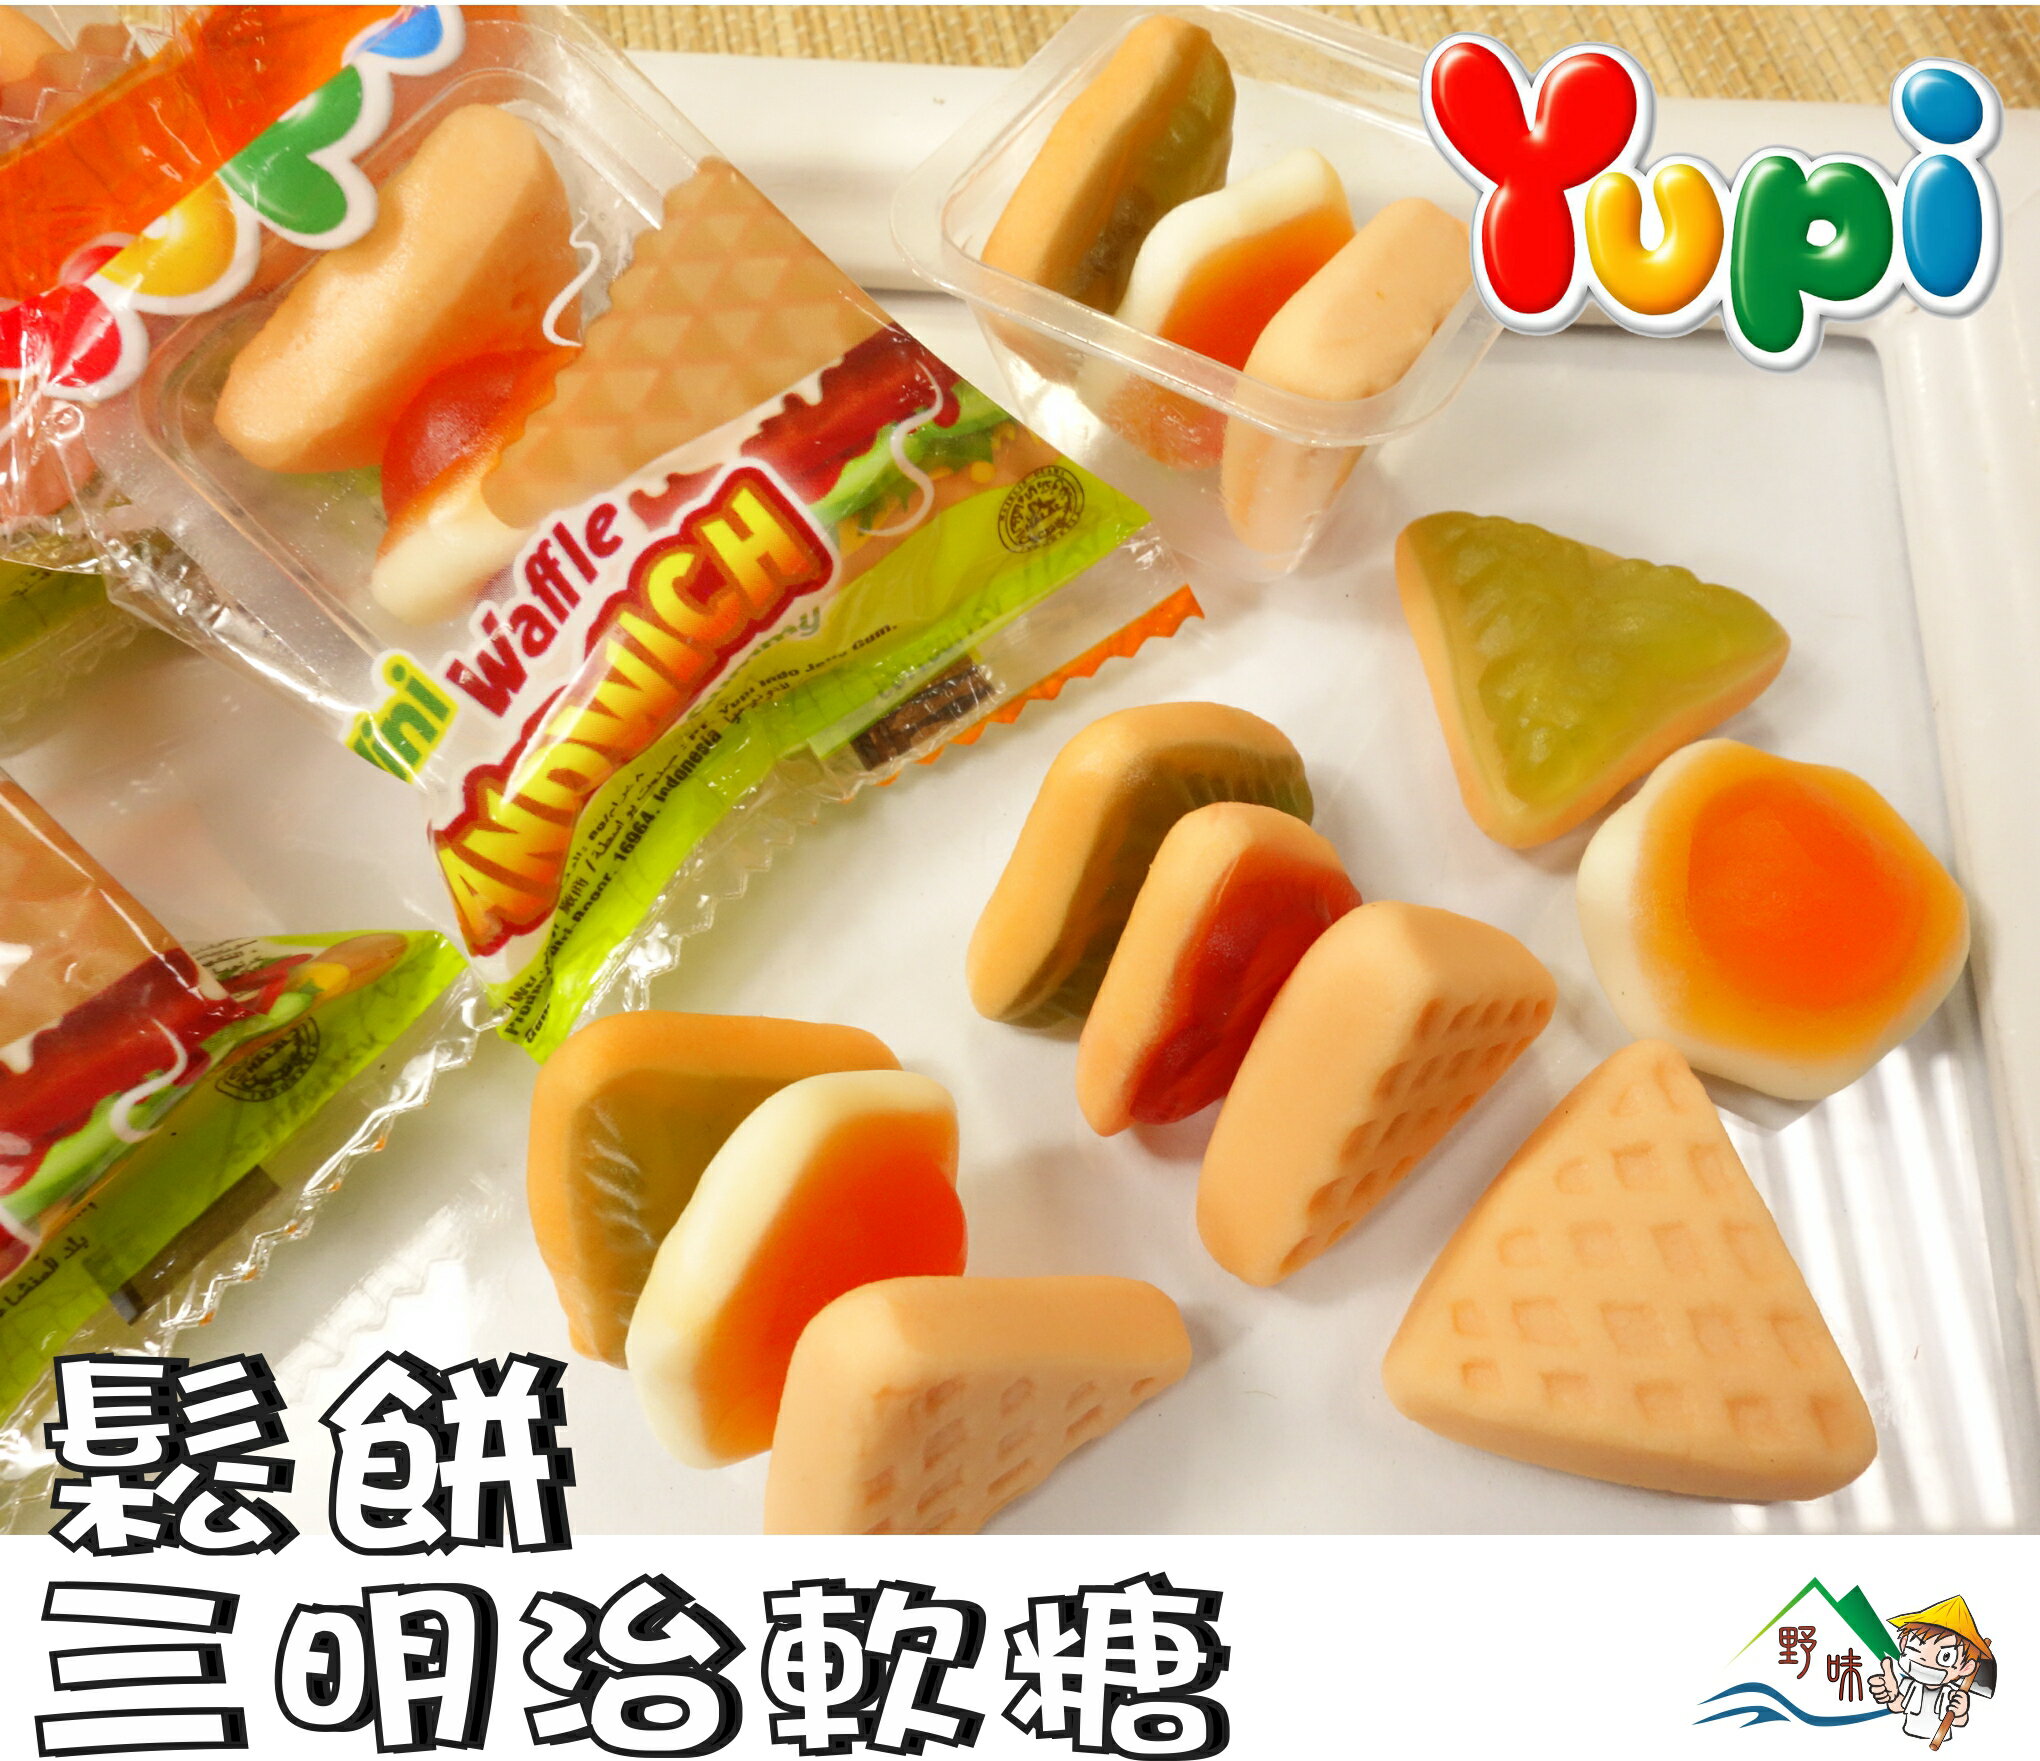 【野味食品】Yupi 呦皮 鬆餅三明治軟糖(三明治QQ)200g/包,378g/包(桃園實體店面出貨)